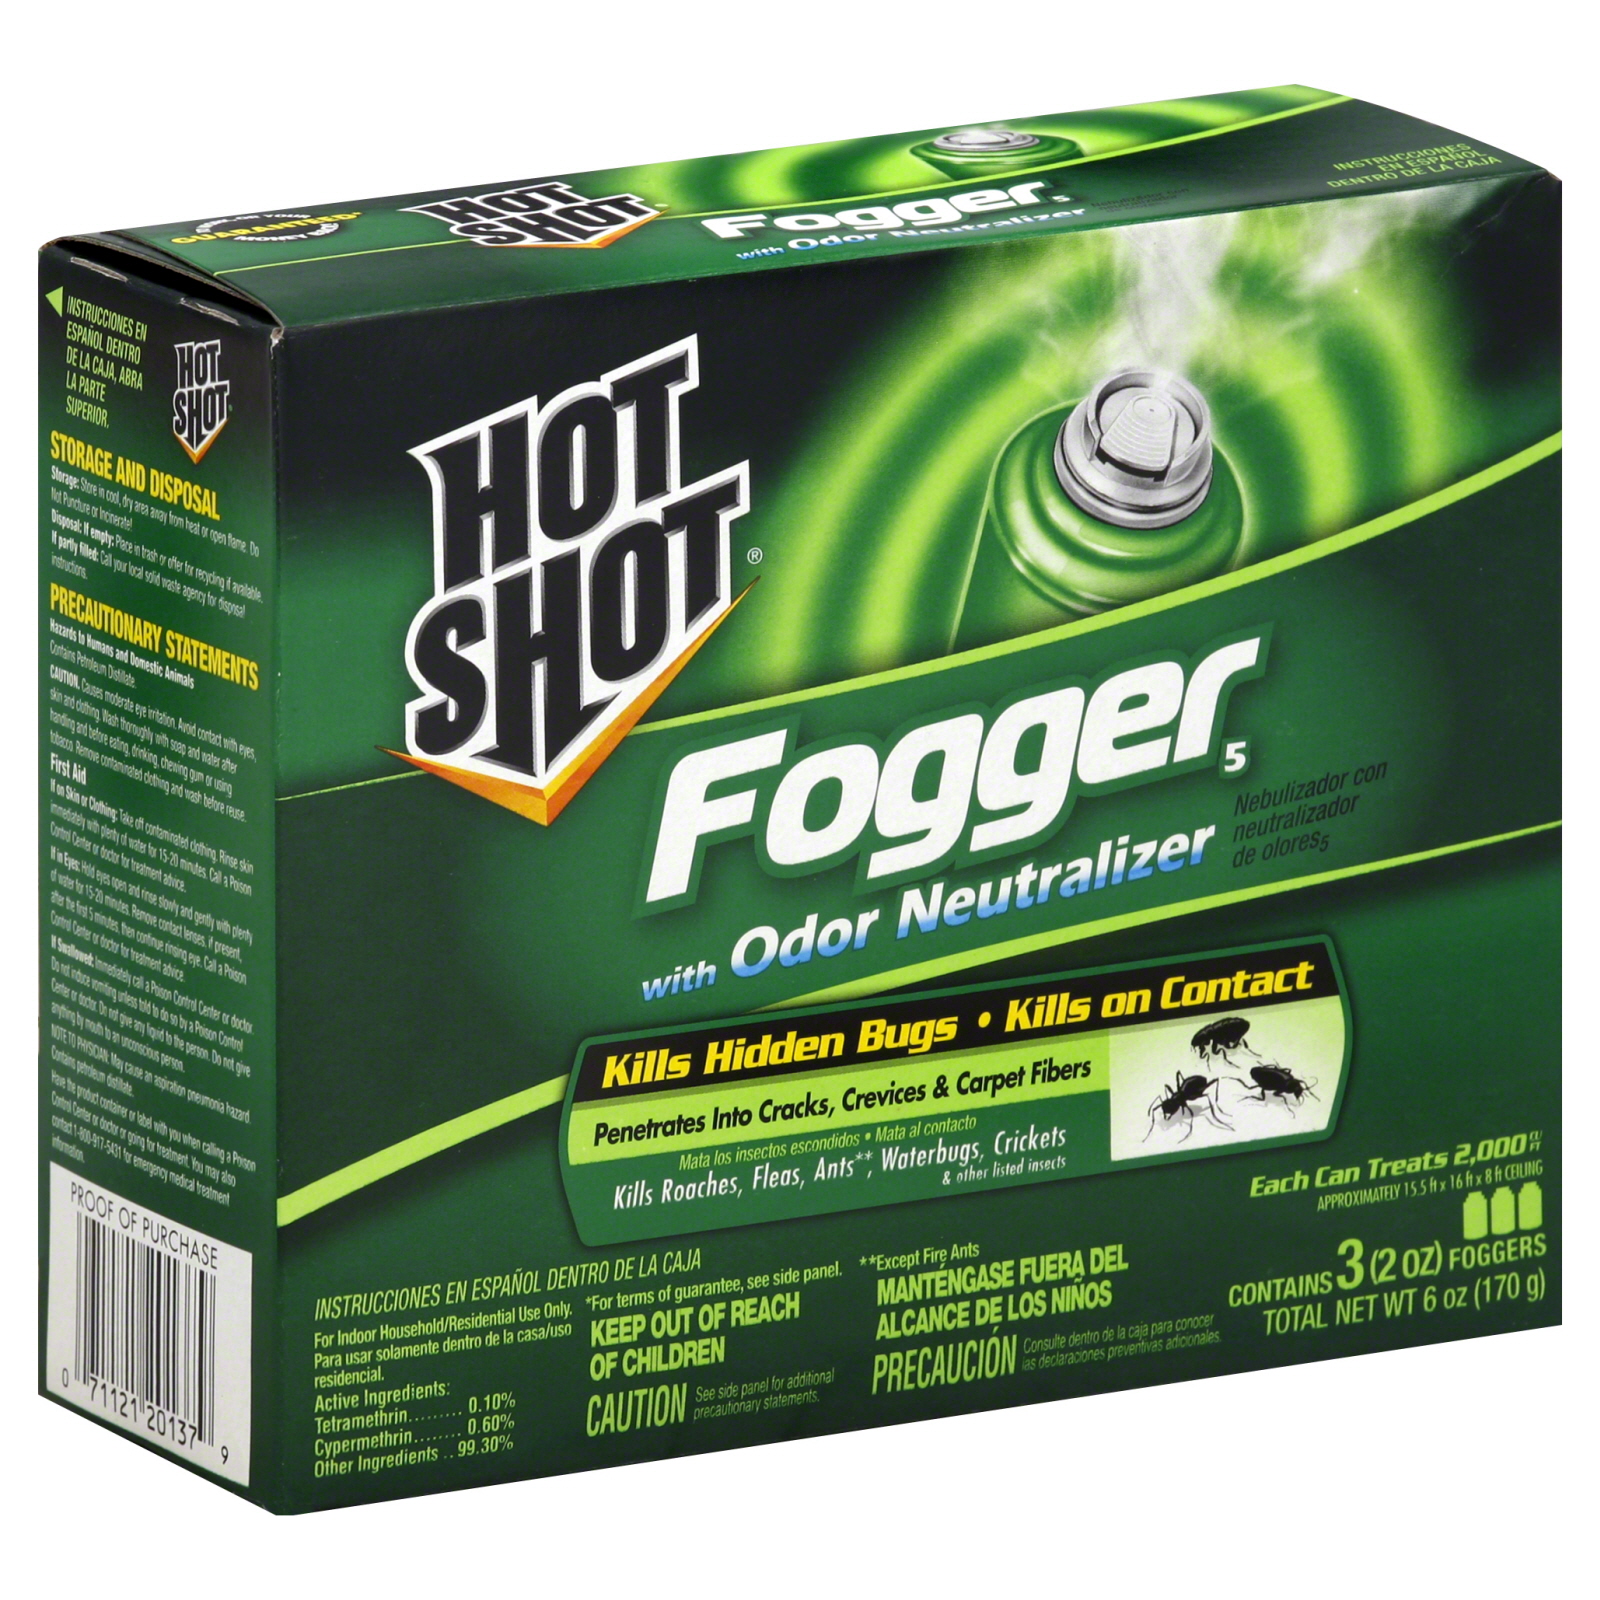 Hot Shot Gear Fogger 5, with Odor Neutralizer 3 - 2 oz foggers [6 oz (170 g)]